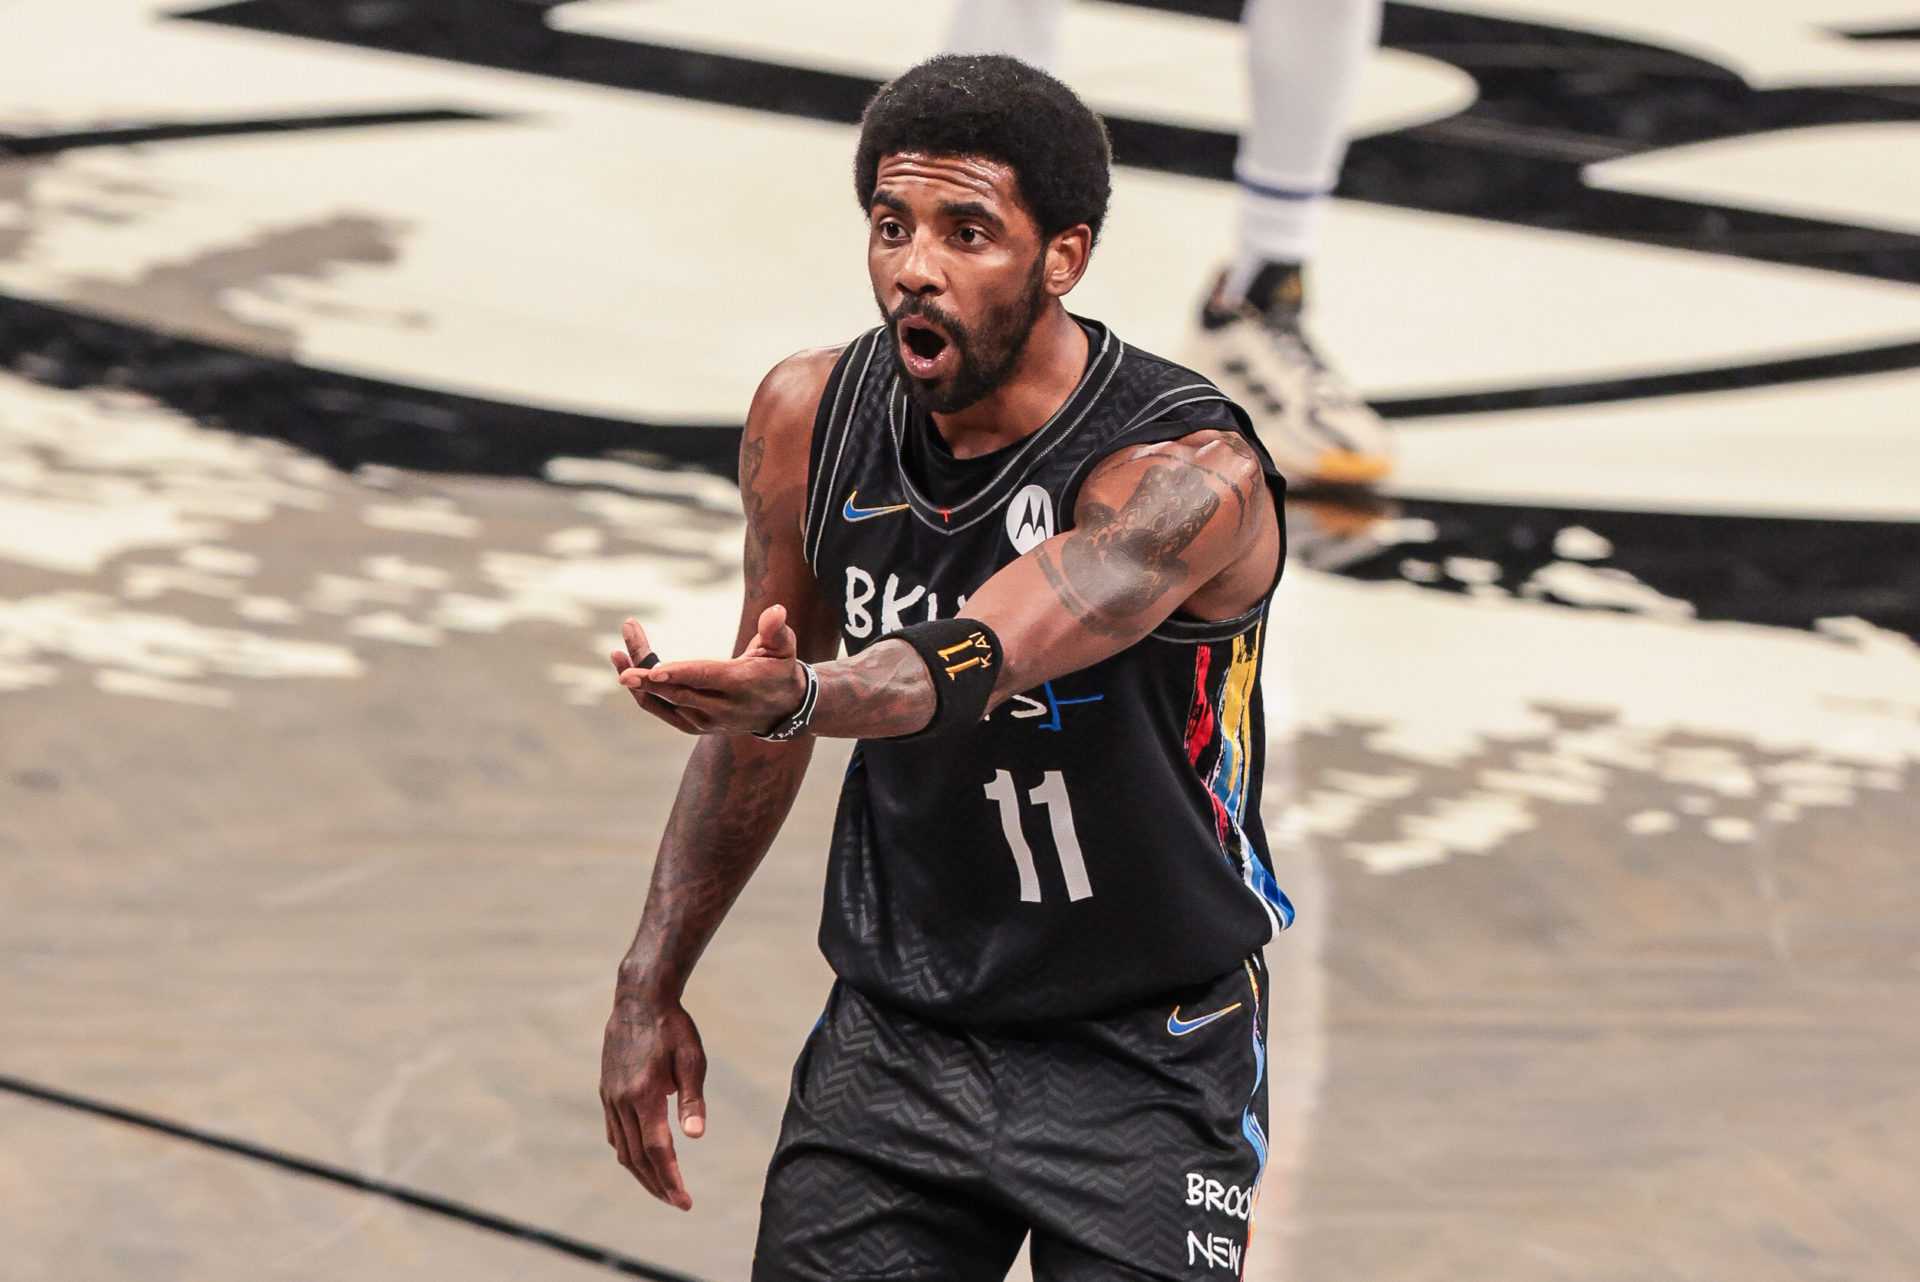 `` Je dois être meilleur '' - Kyrie Irving de Nets s'excuse auprès des fans après une victoire rapprochée contre les Knicks